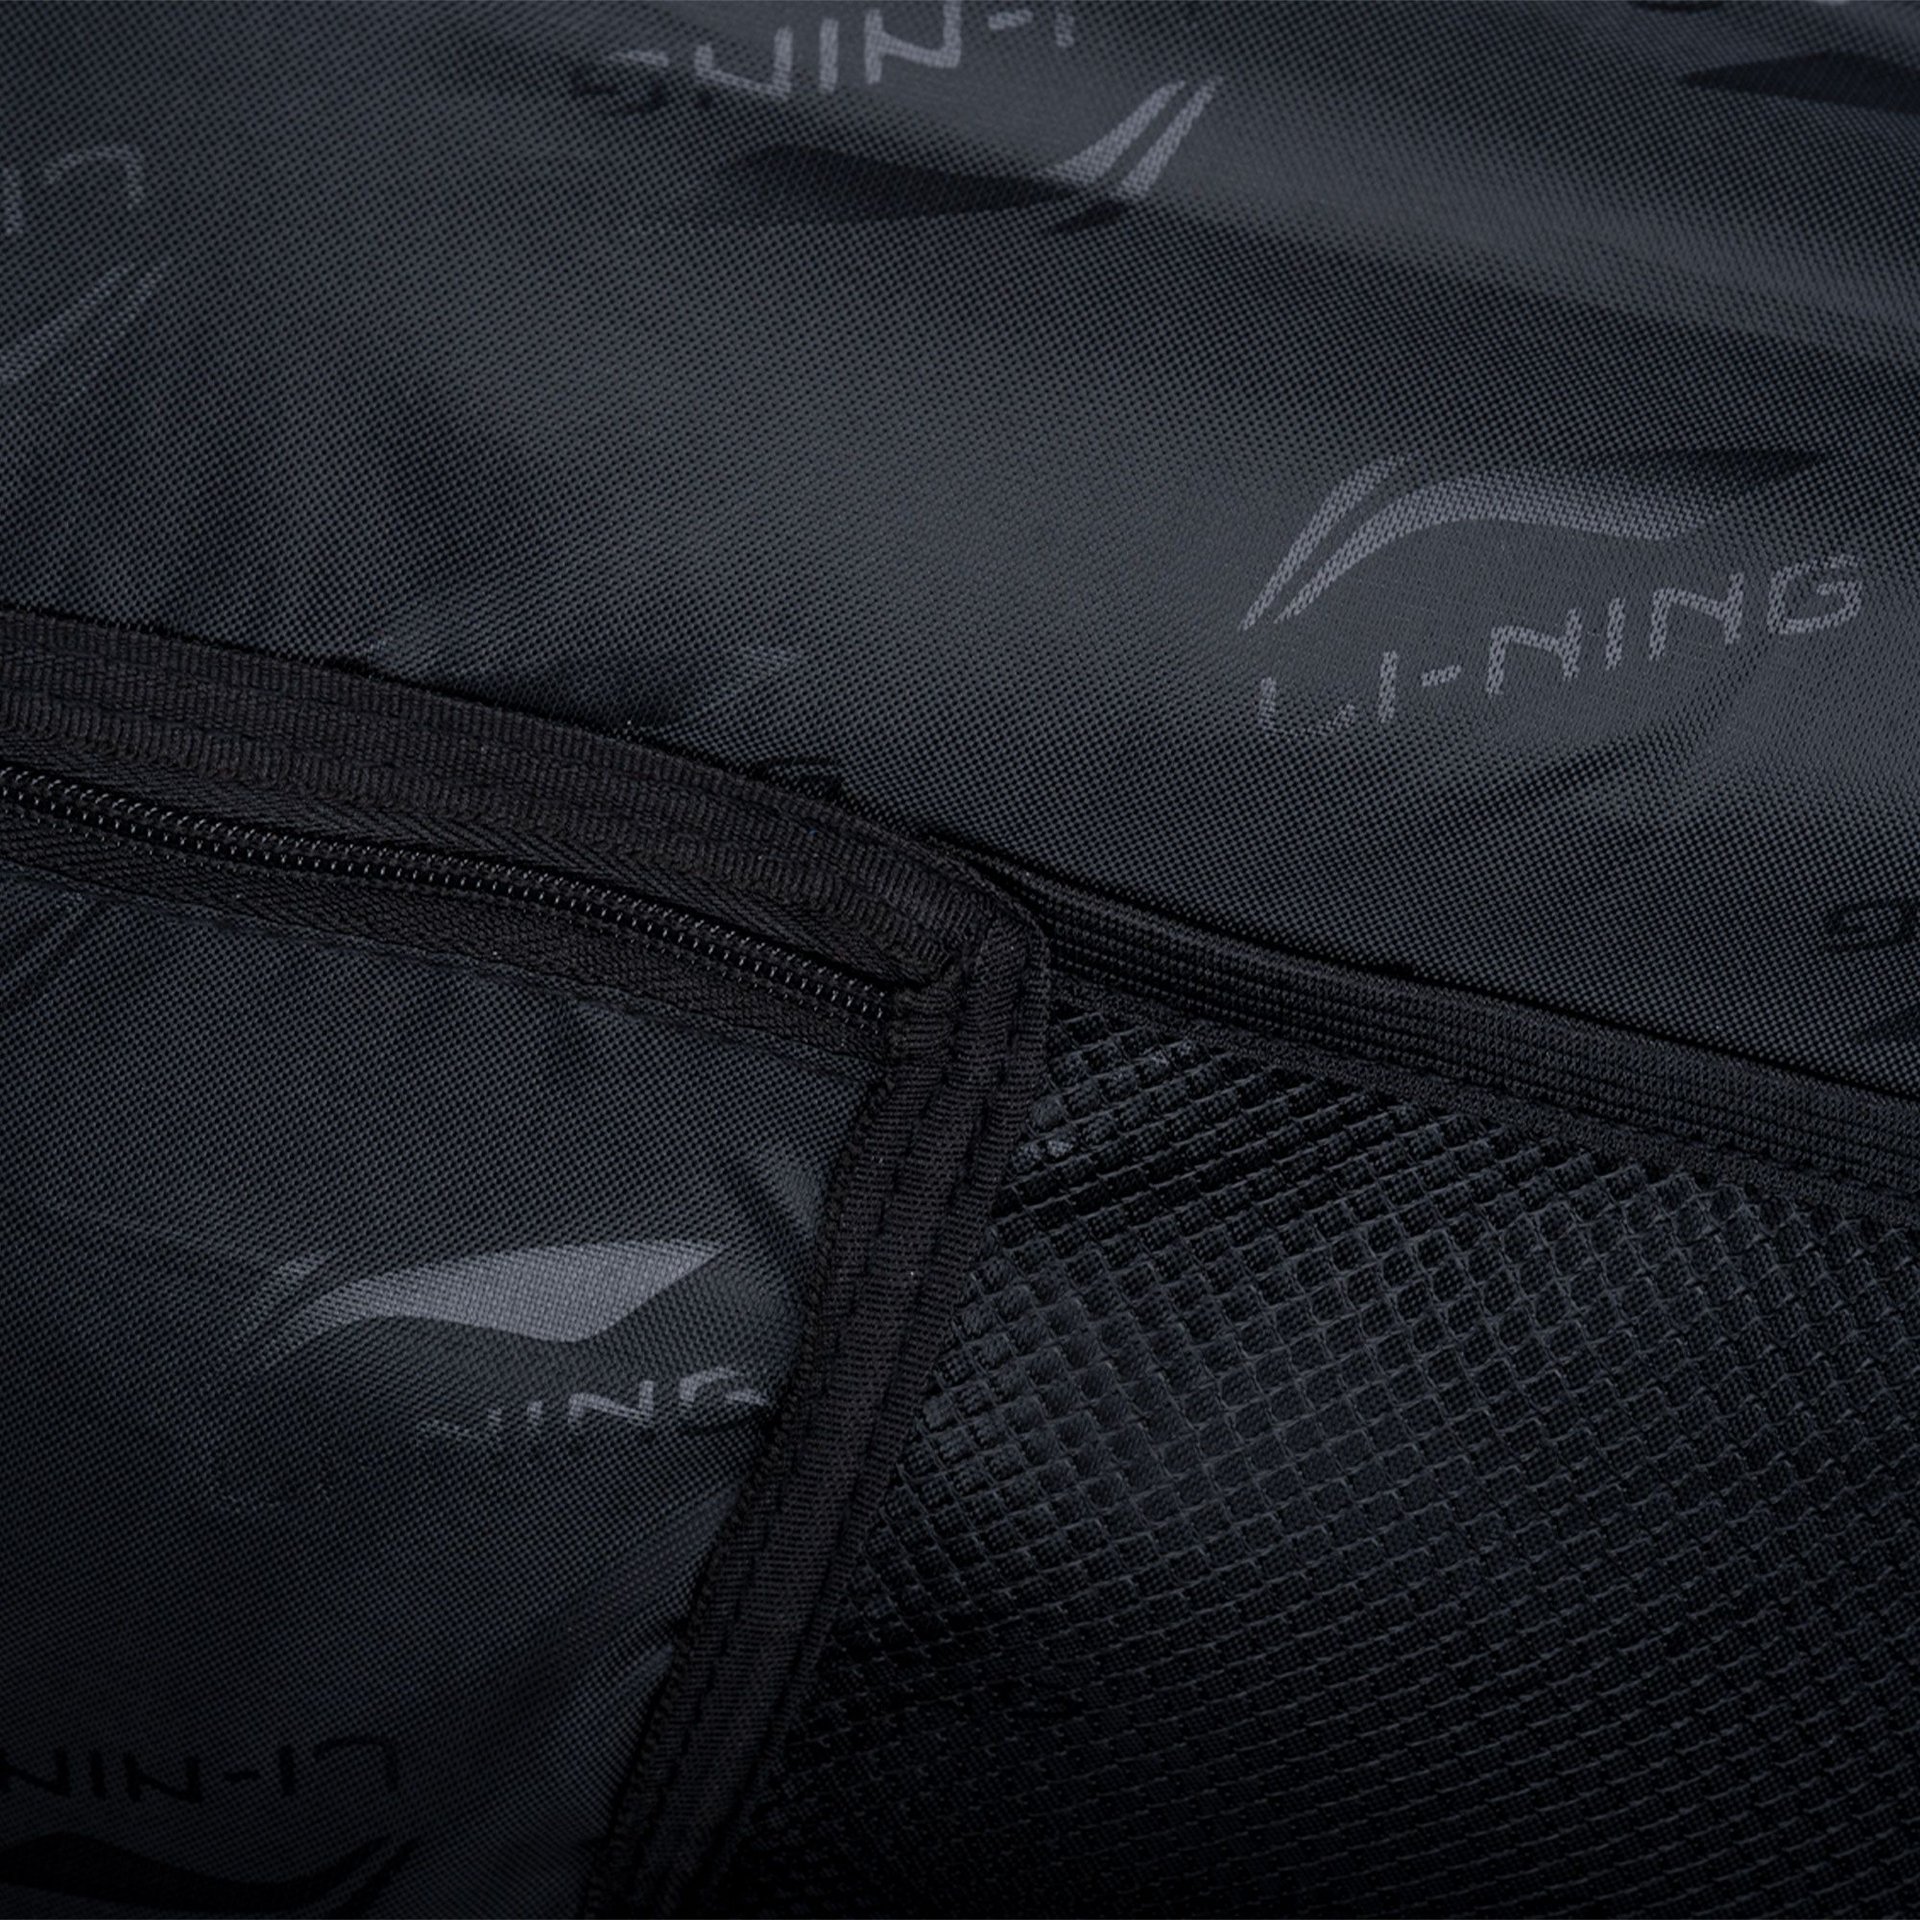 Crato Badminton Kit Bag - Premium Material